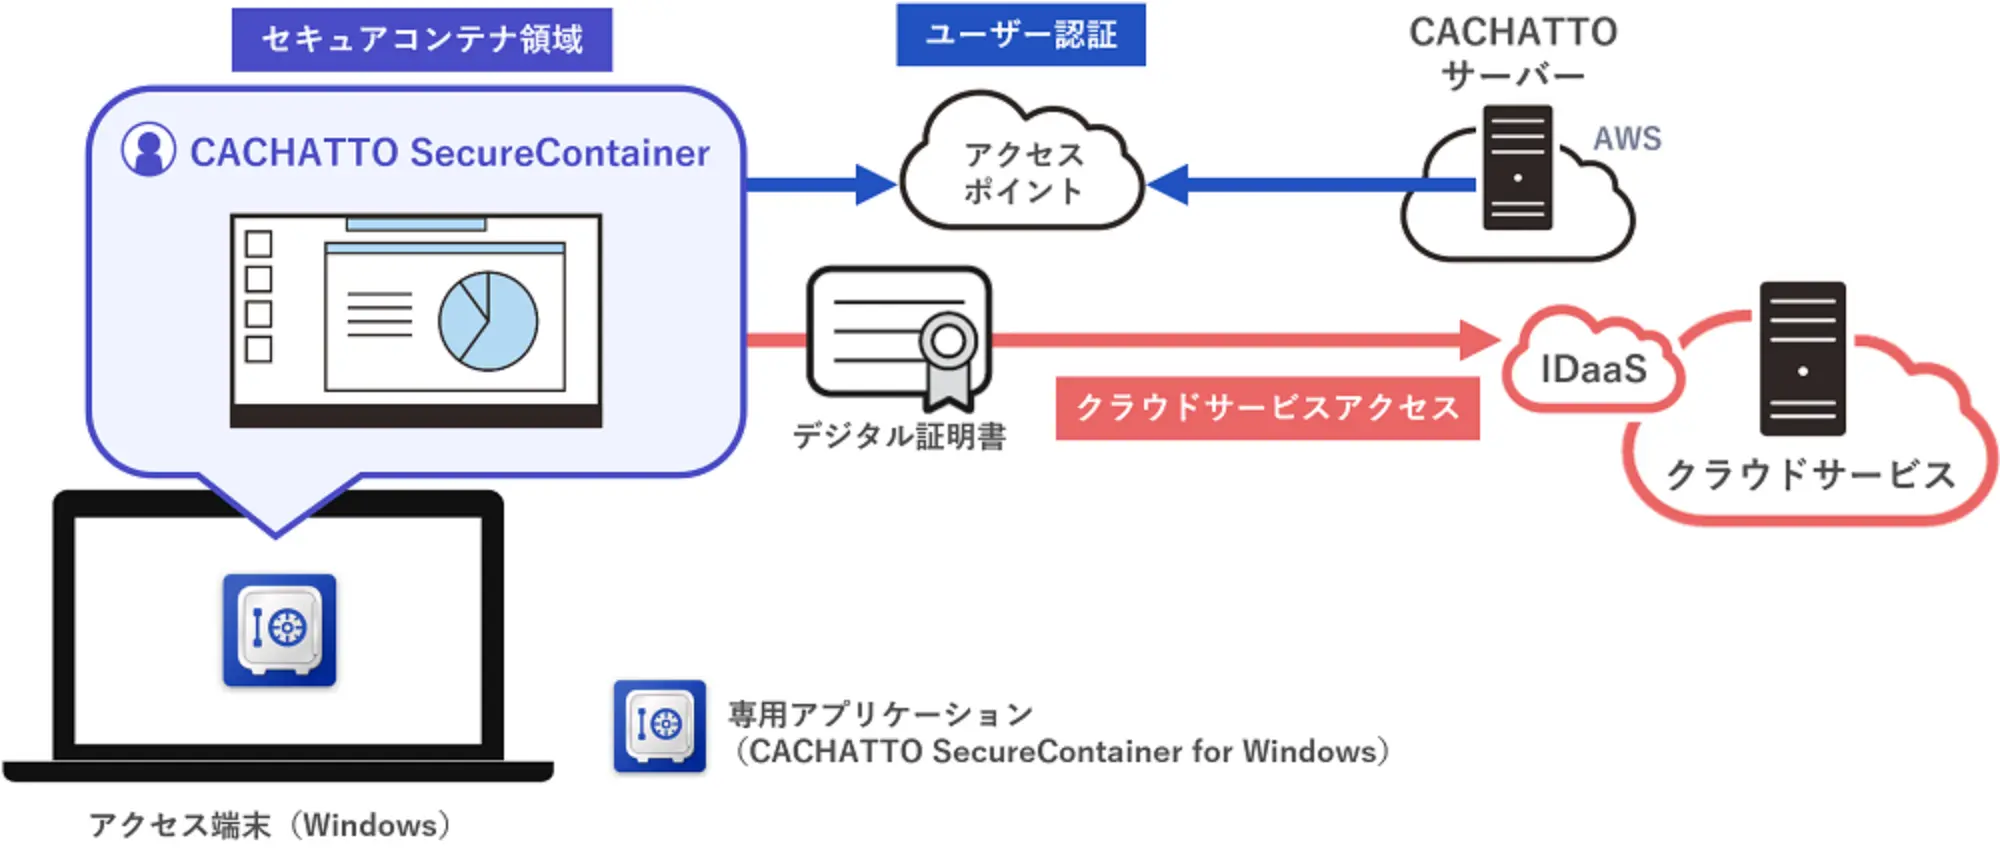 クラウド提供の構成イメージ（ CACHATTO SecureContainer Cloud ）